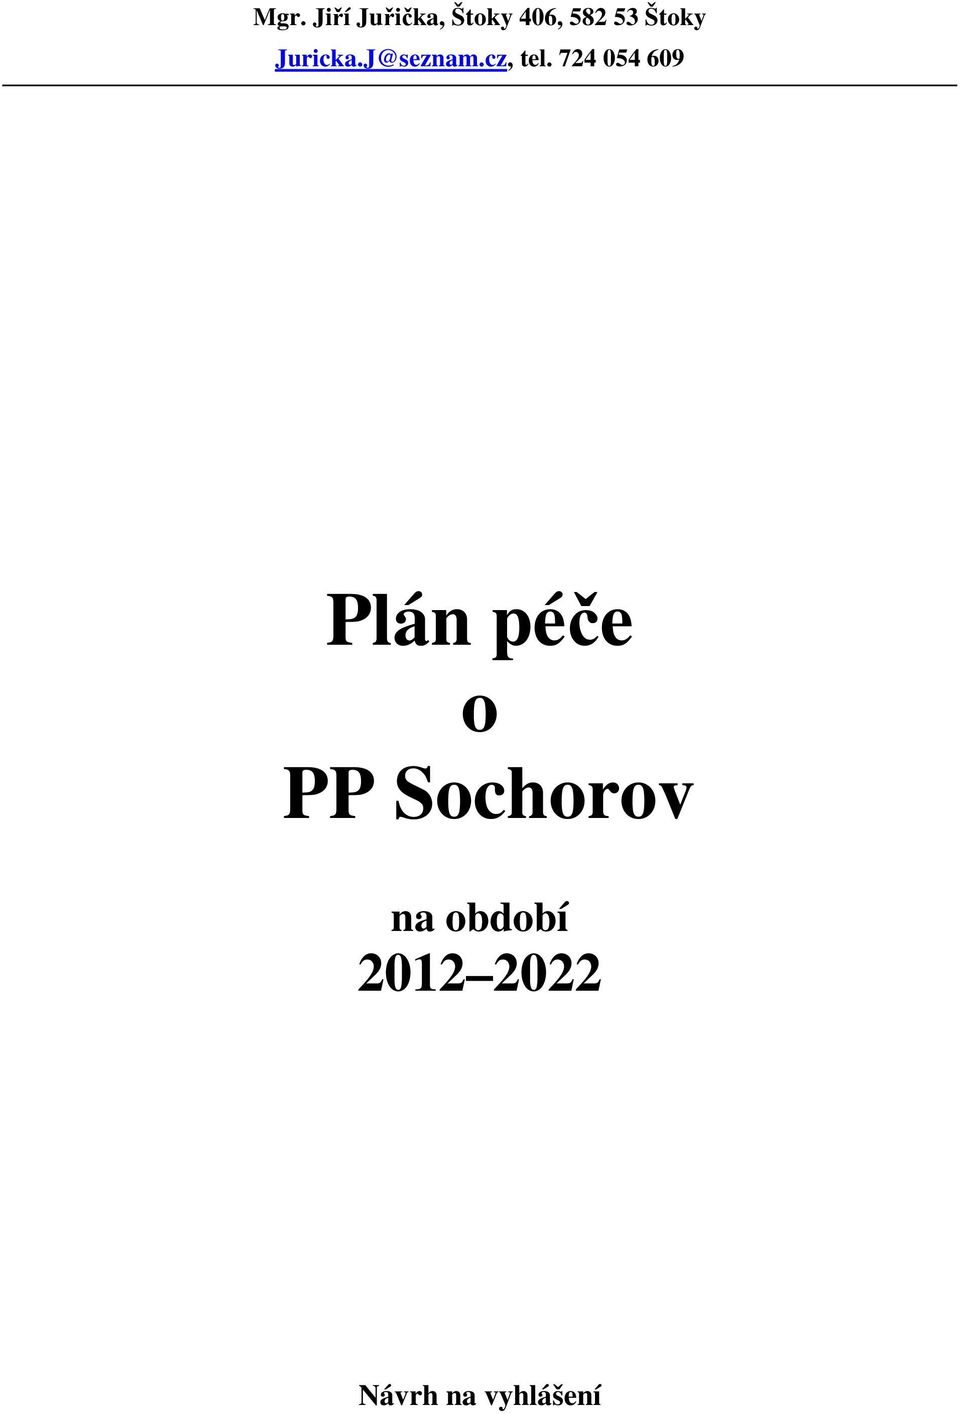 724 054 609 Plán péče o PP Sochorov